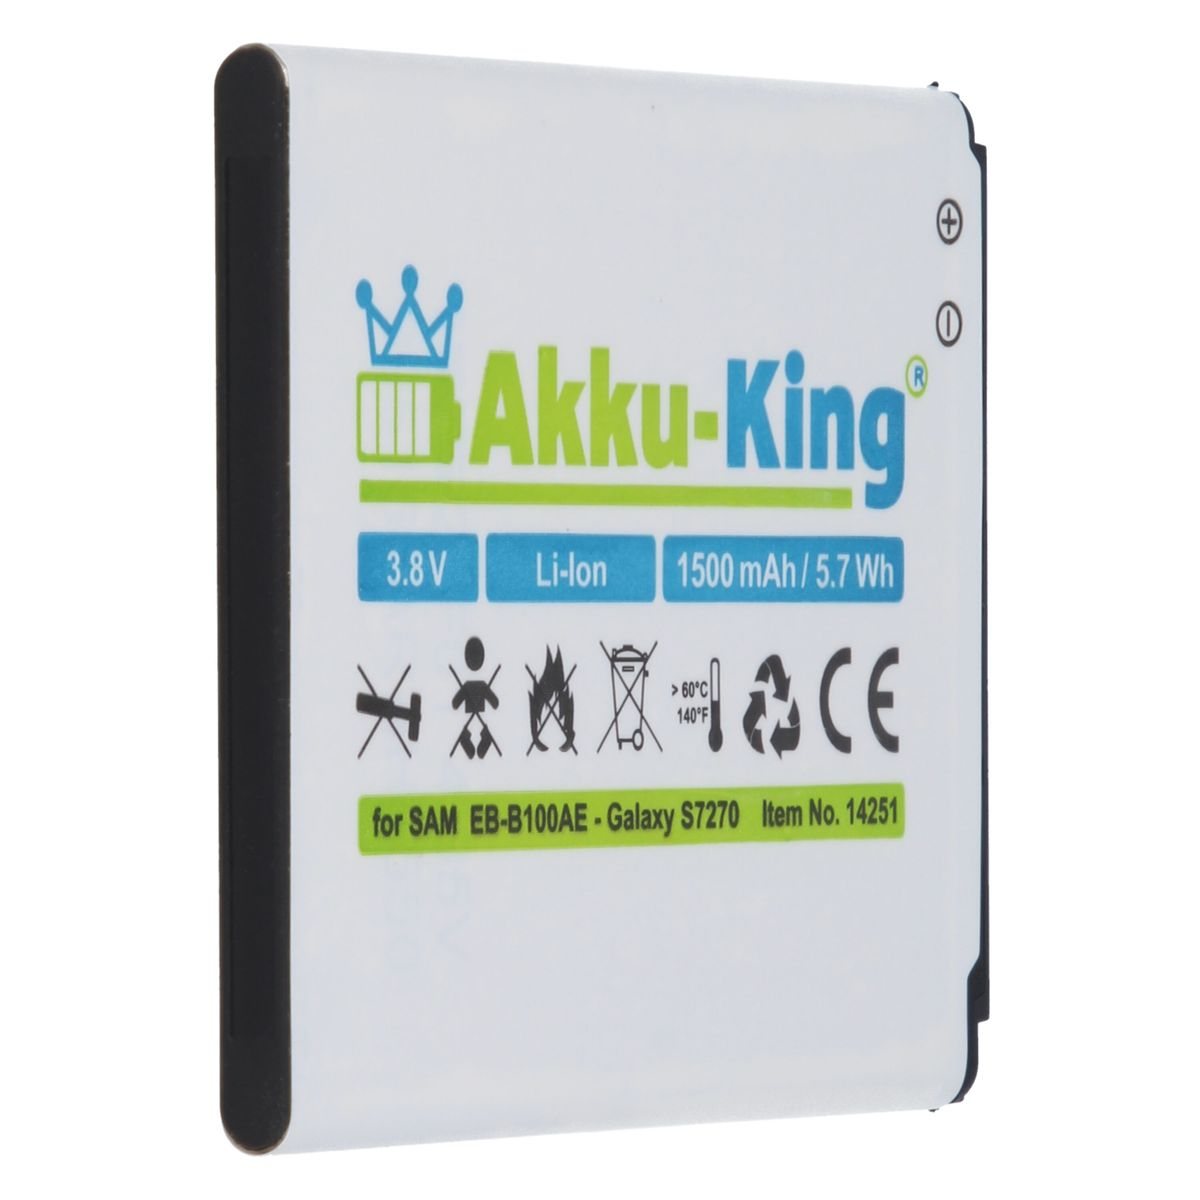 3.8 Samsung kompatibel Handy-Akku, mit Li-Ion Volt, AKKU-KING Akku 1500mAh EB-B100AE